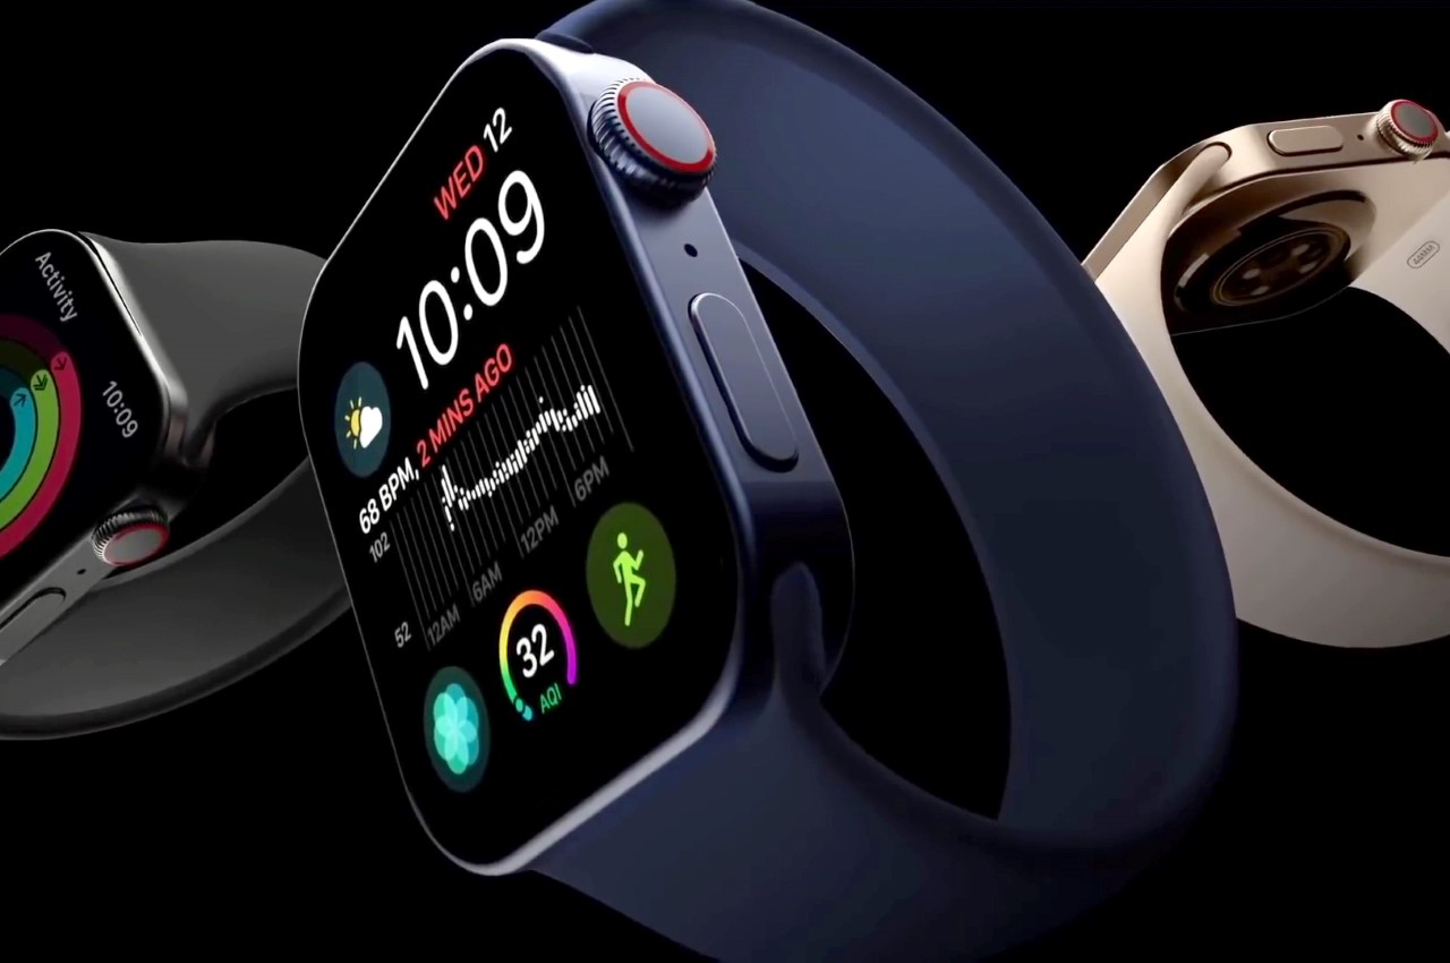 Apple Watch Series 7 rendering by Matt Talks Tech